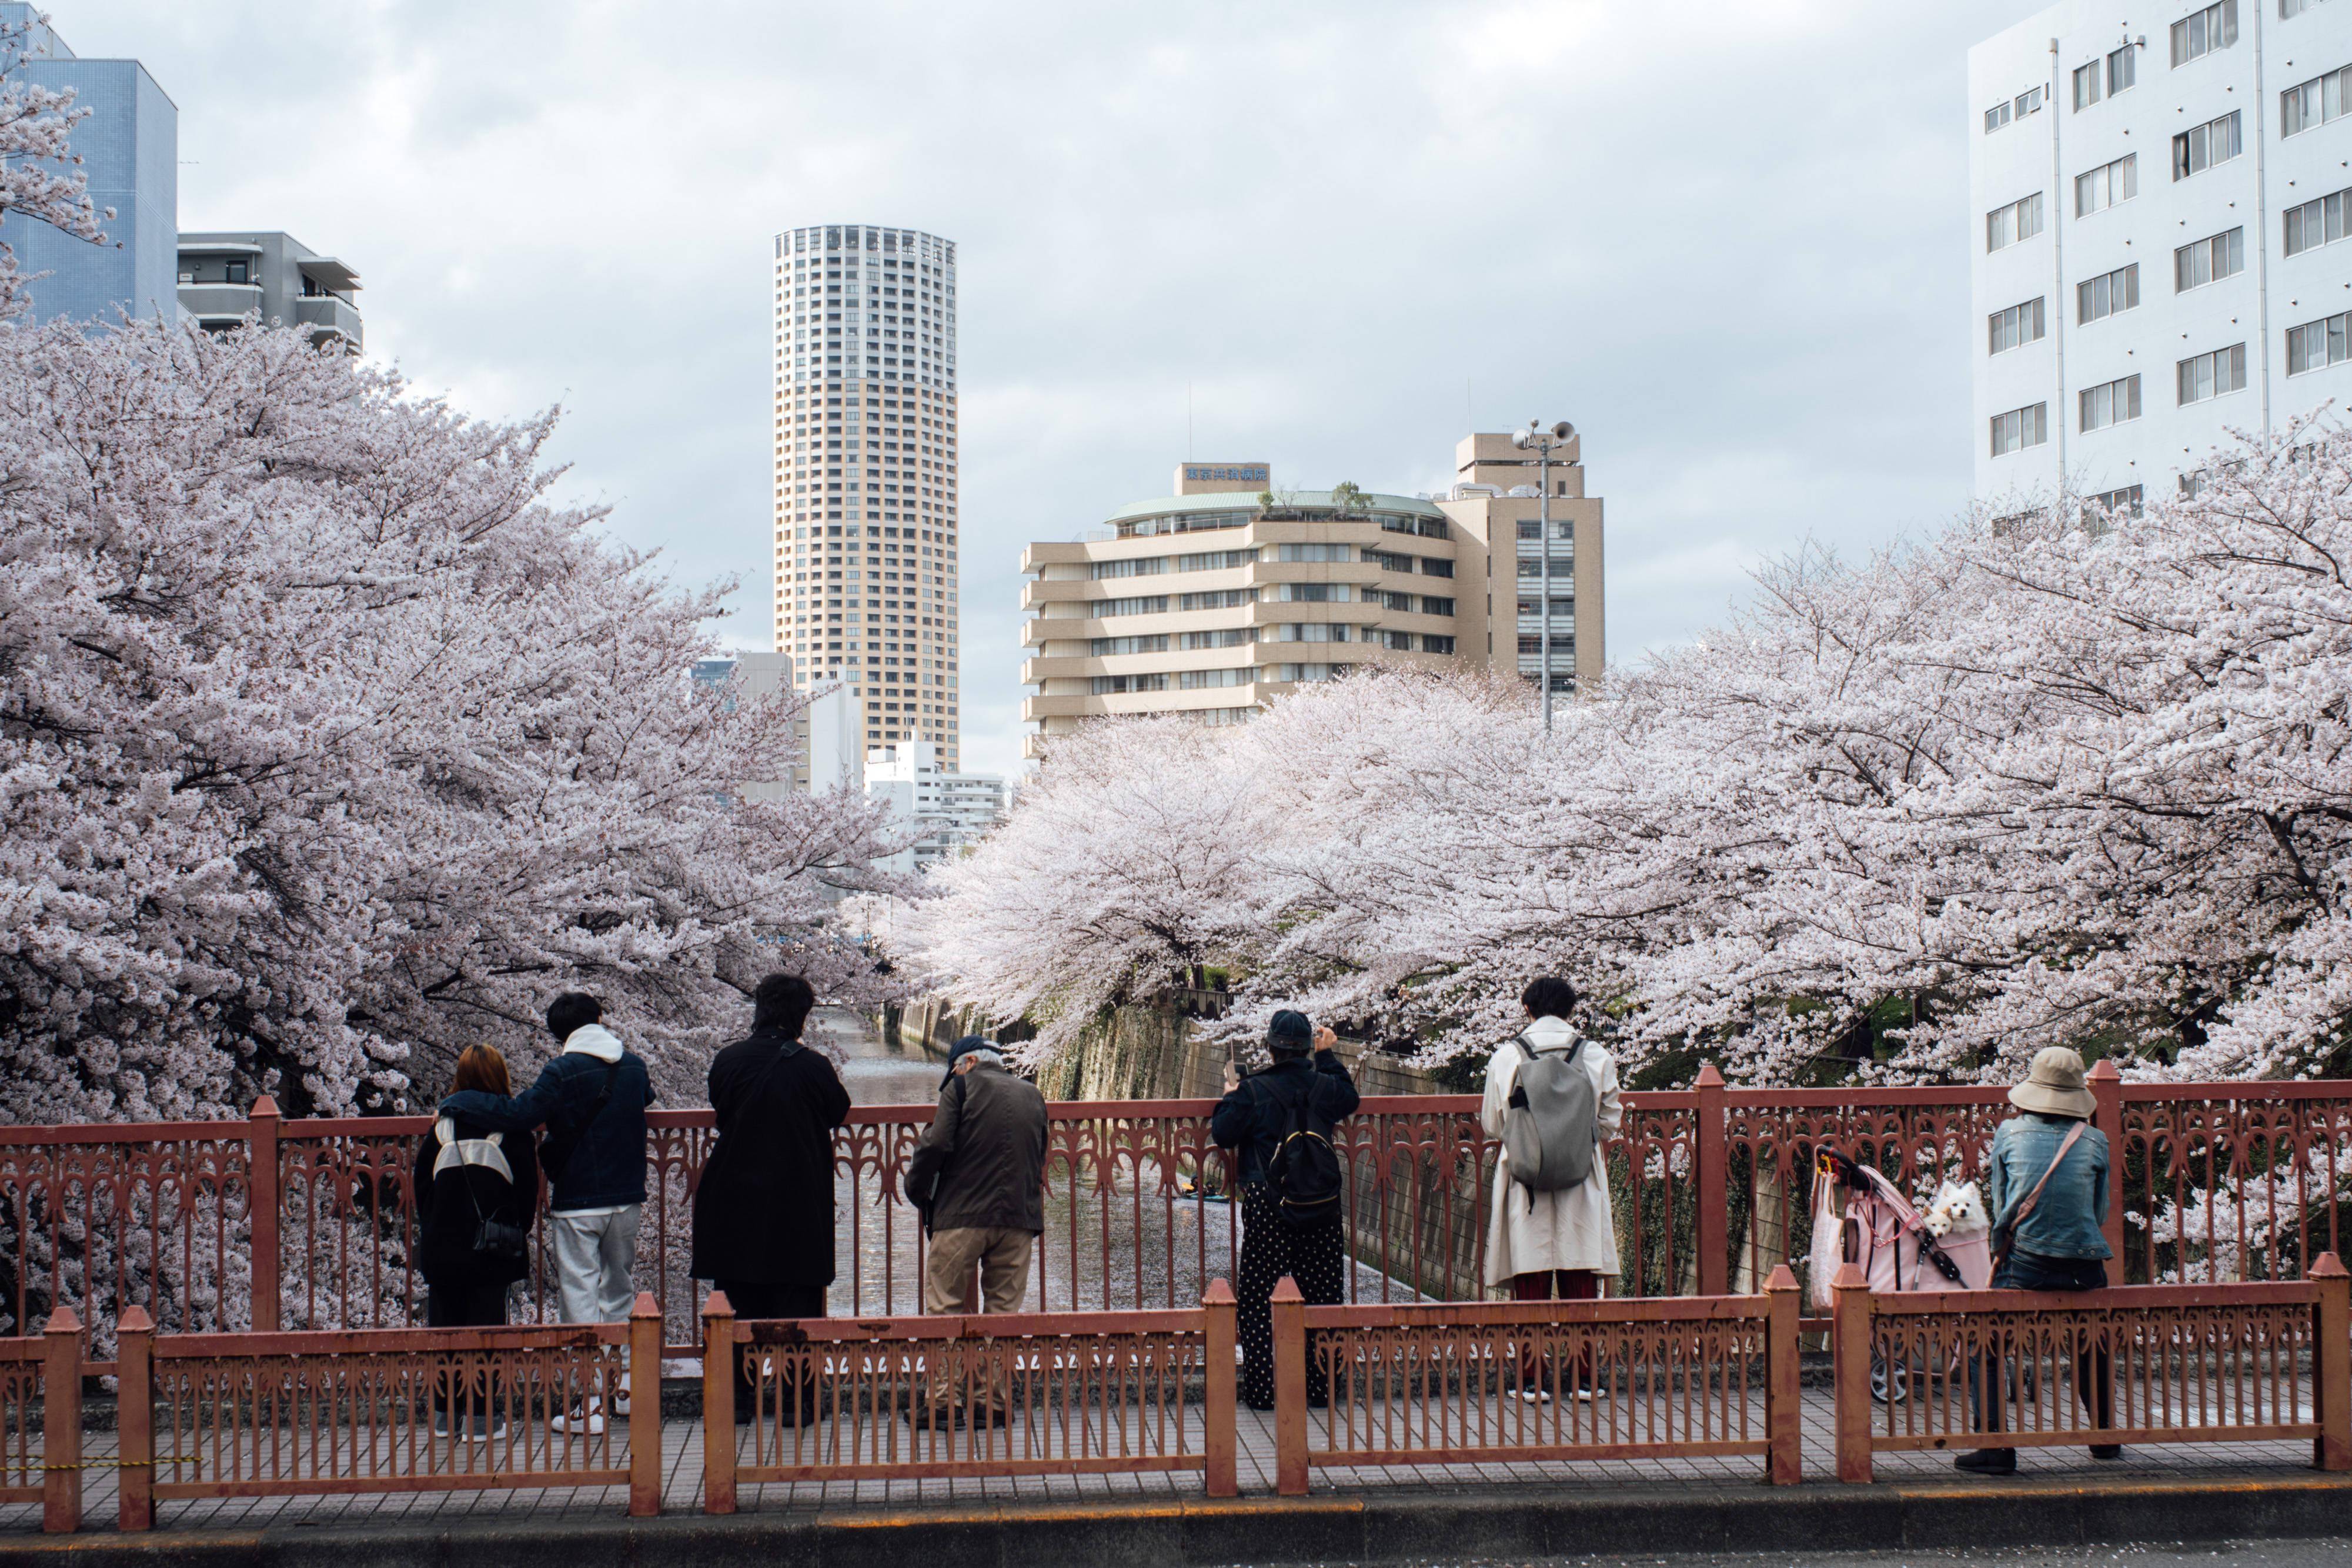 新华社记者 张笑宇 摄东京进入樱花季,不少市民走上街头赏樱